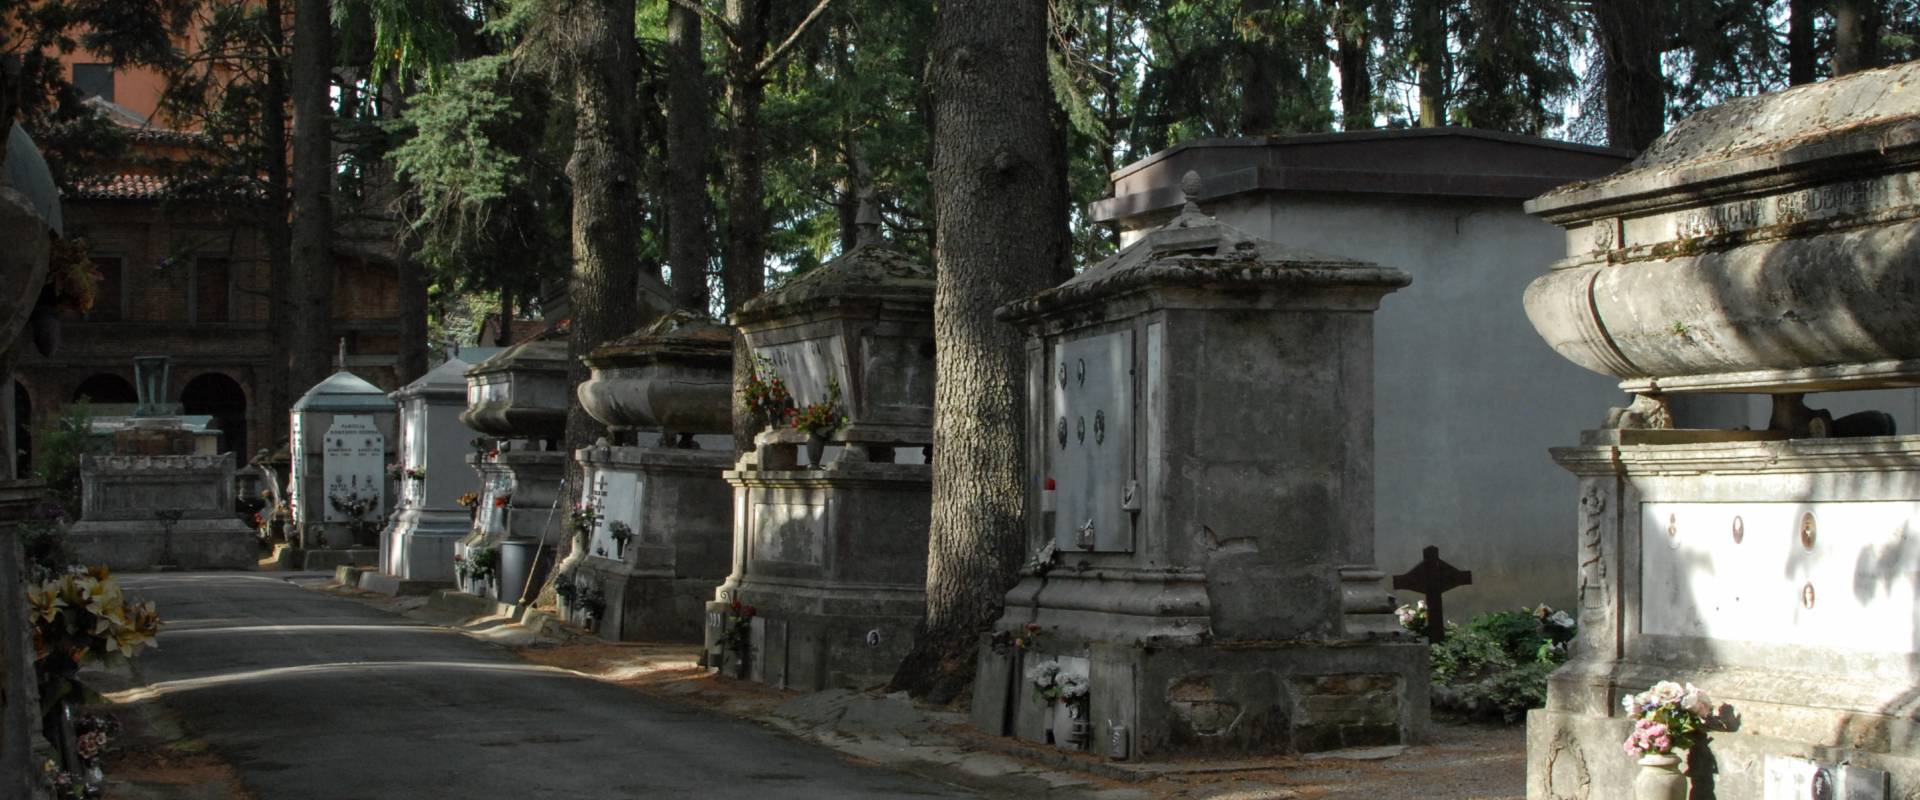 DSC 4113 cimitero monumentale Massa Lombarda 16 photo by SveMi